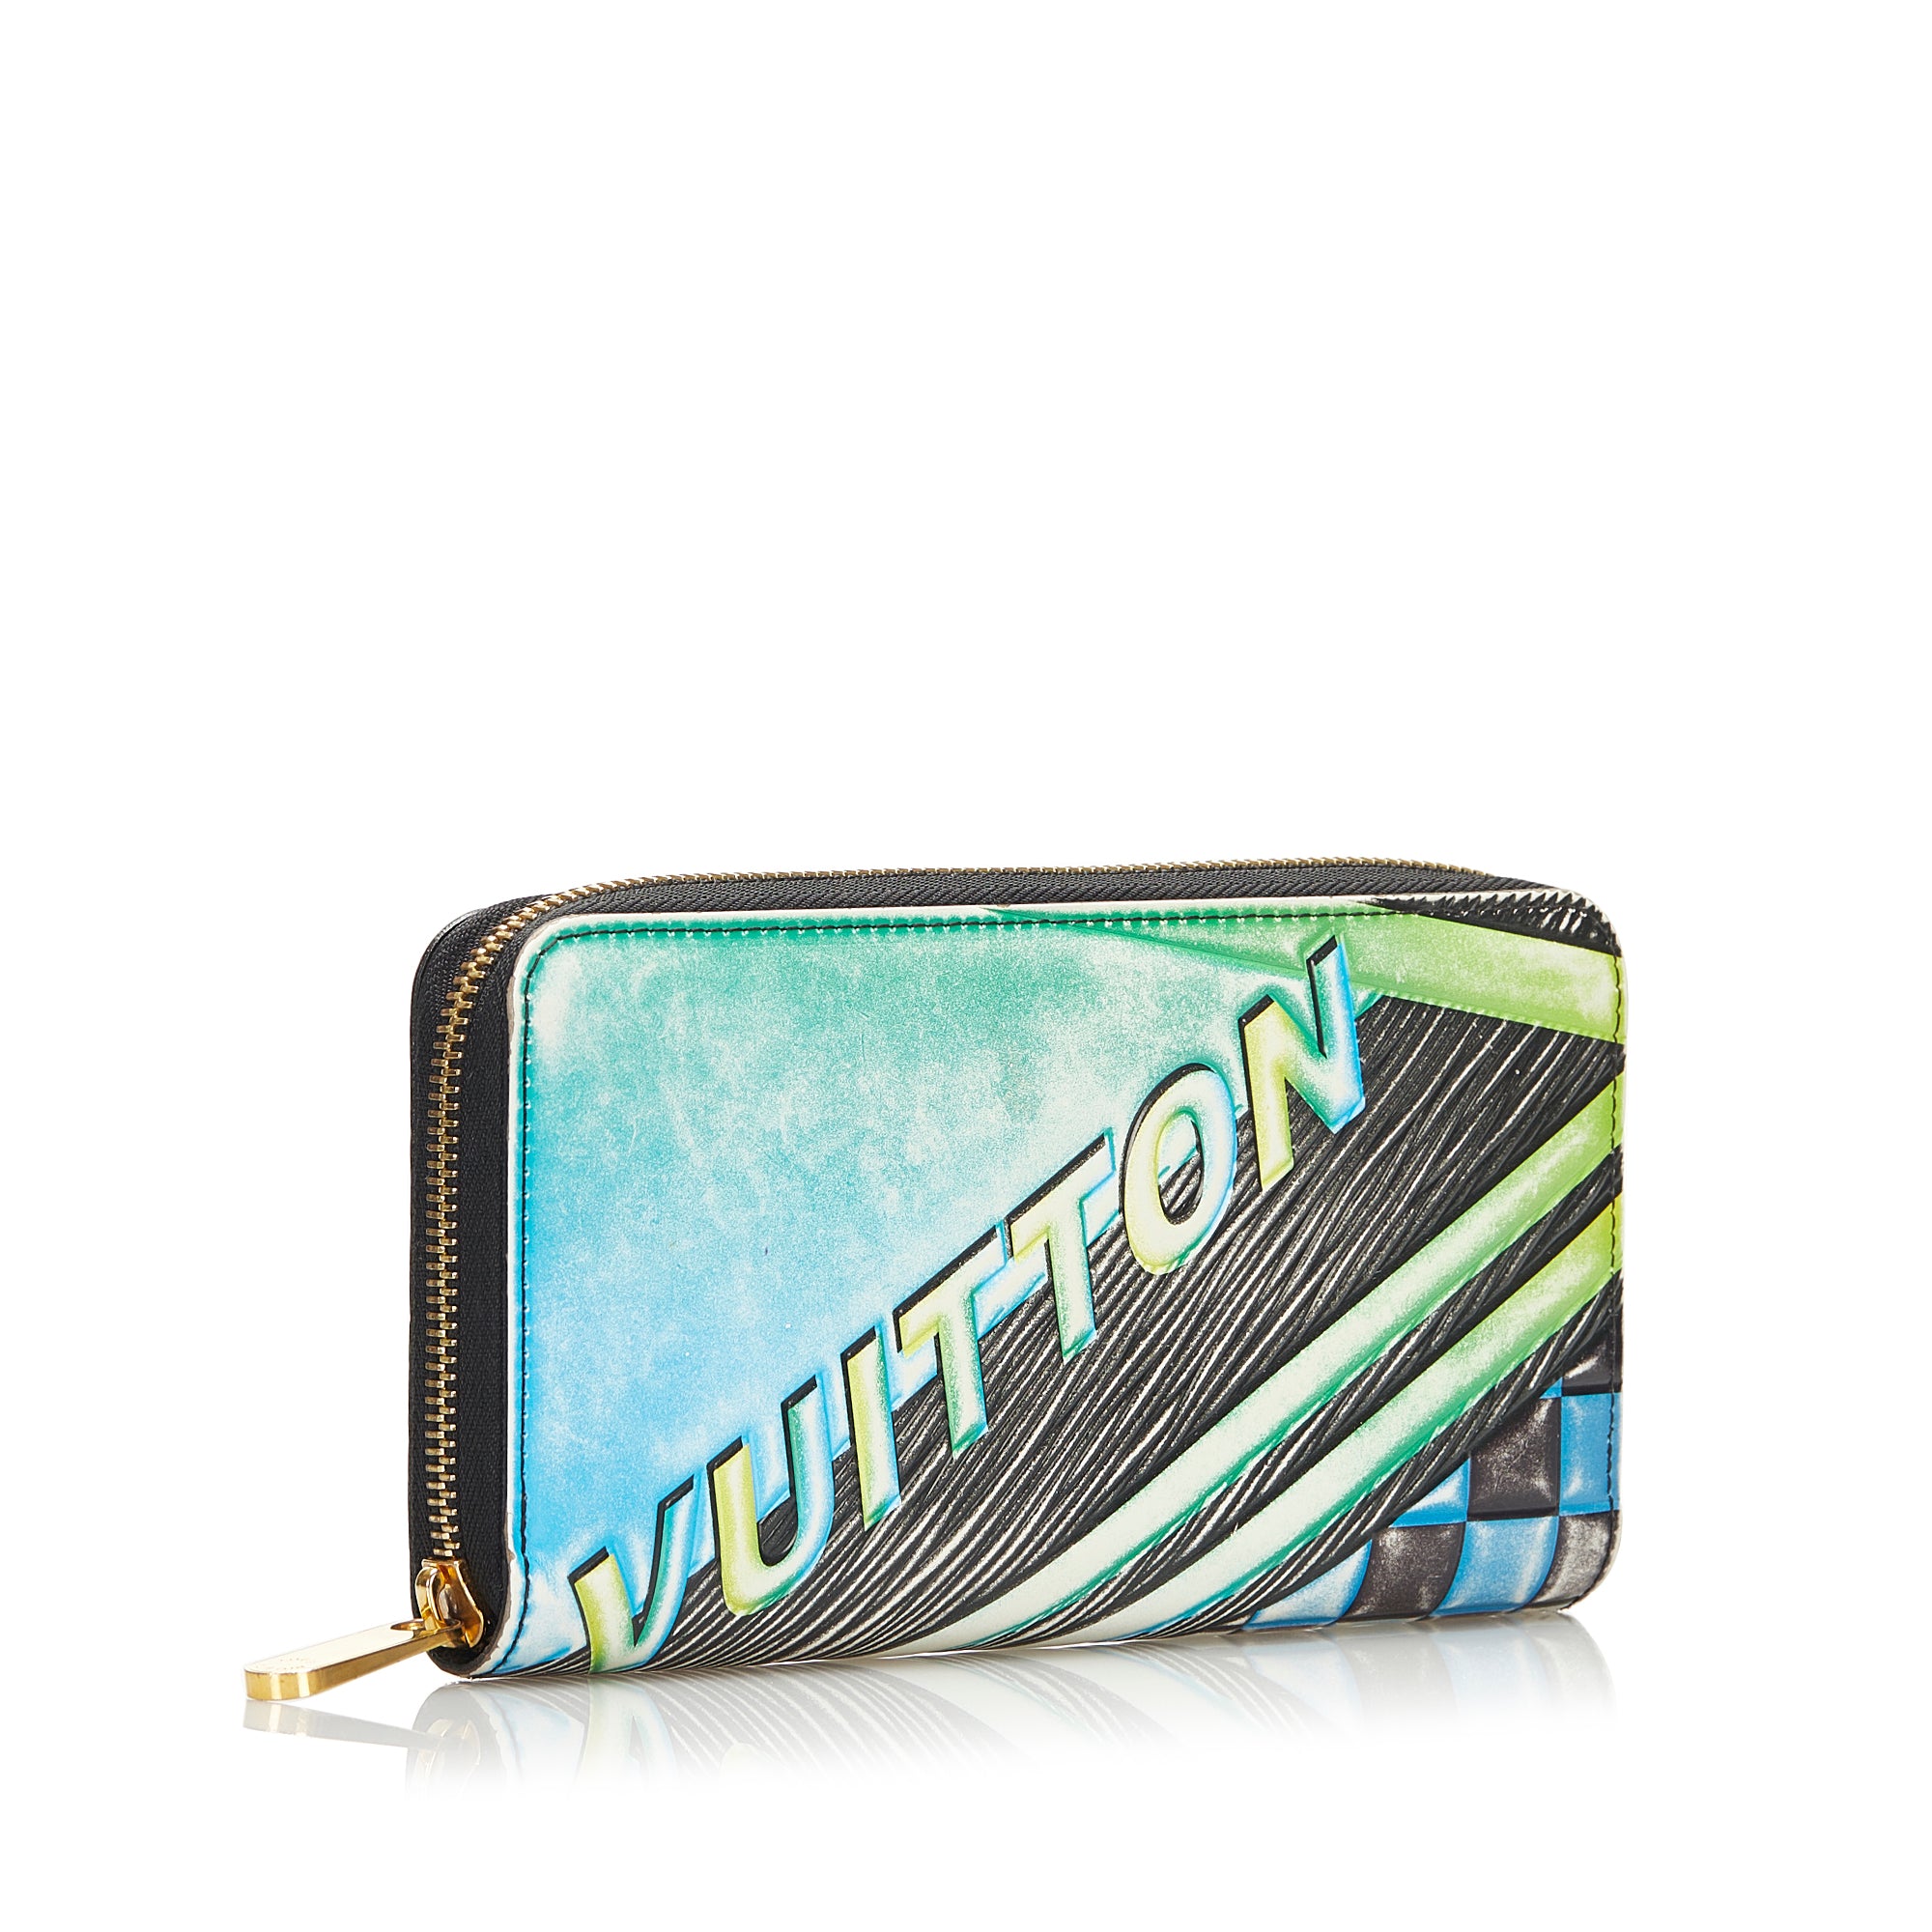 Louis Vuitton Articles de Voyage Pastel Blue Zippy Wallet — Otra